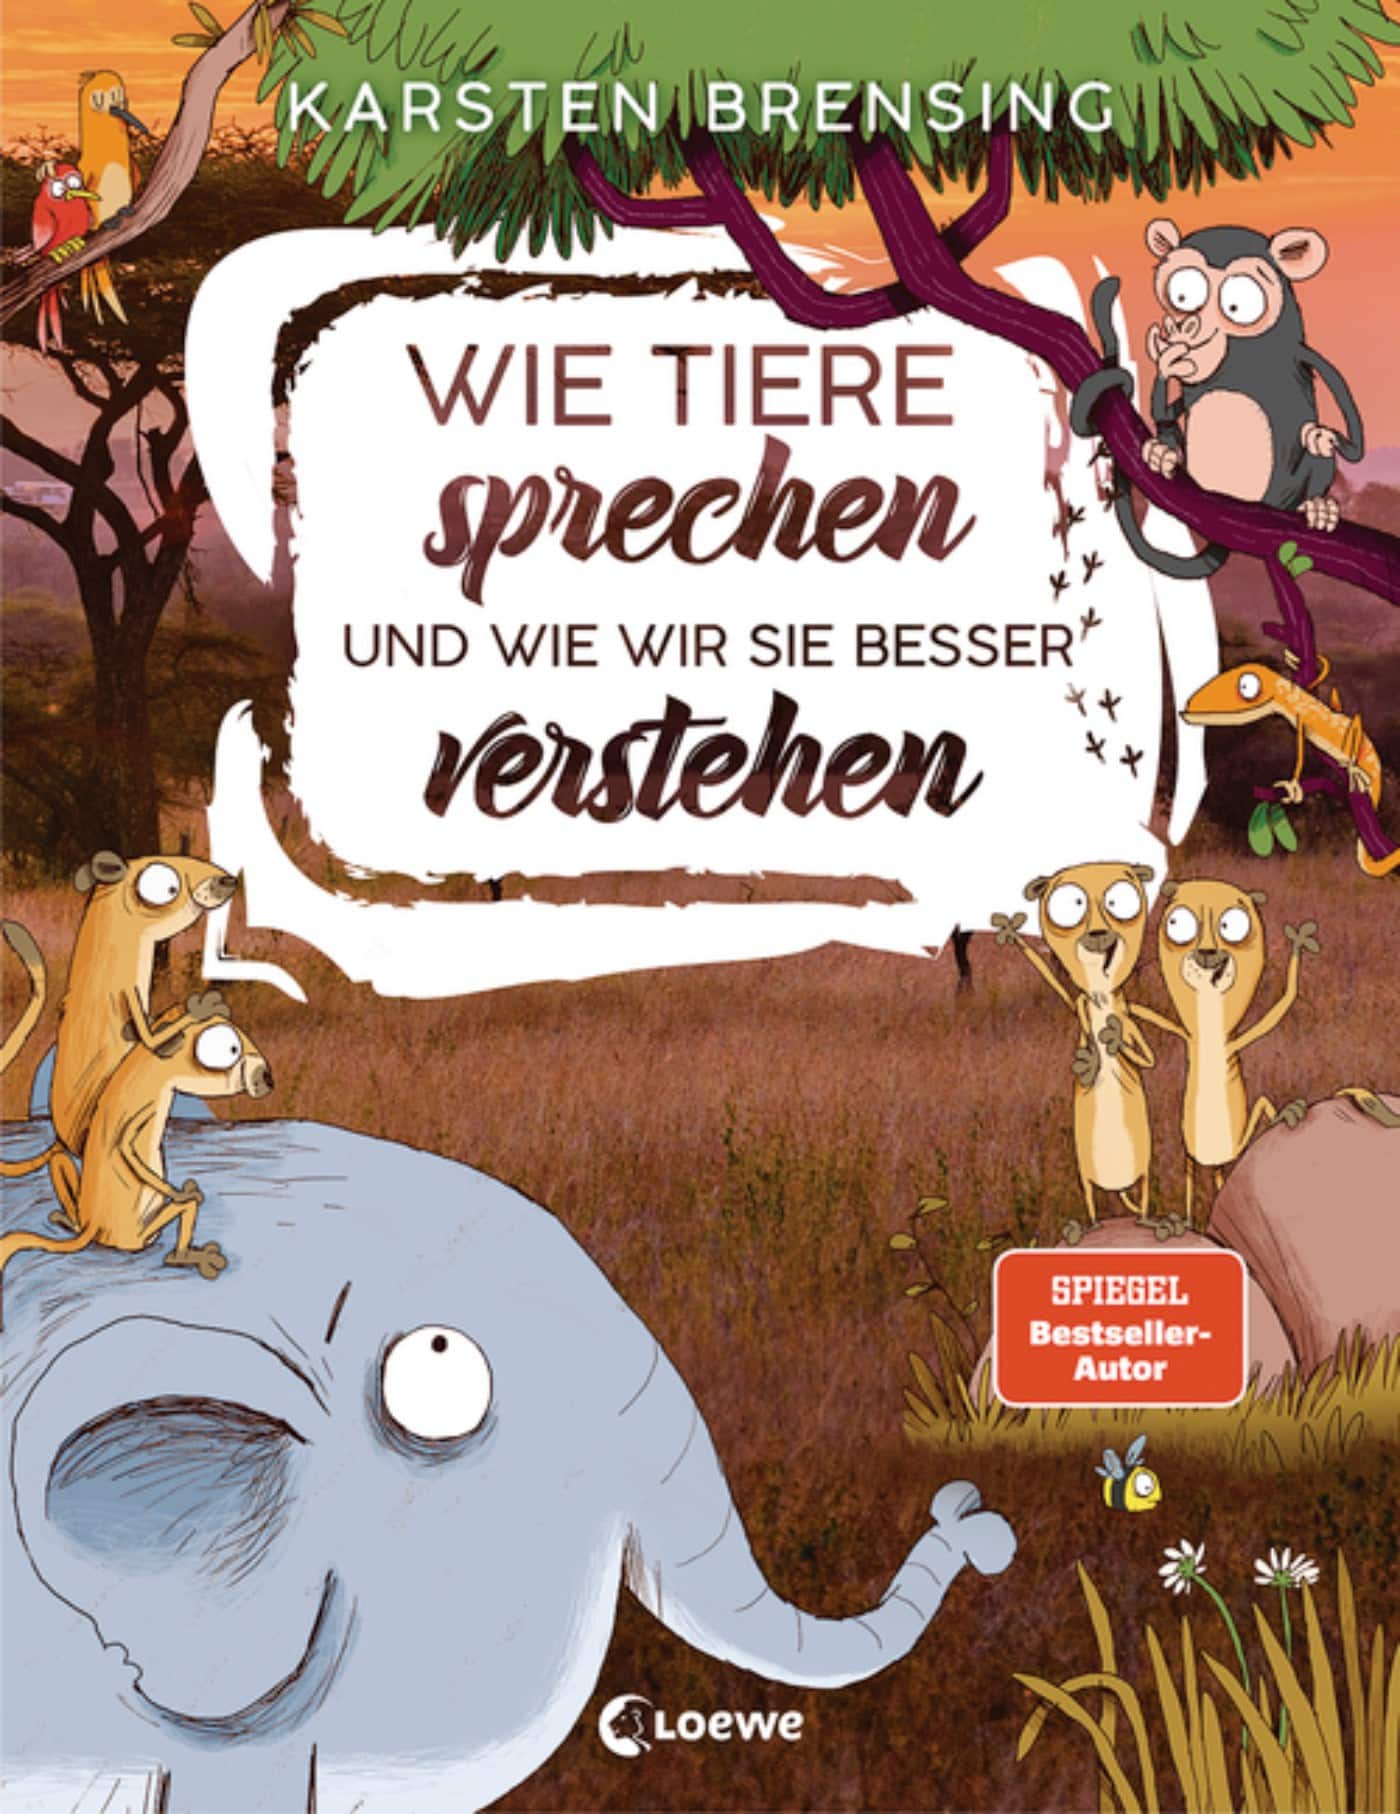 Kindersachbuch: Wie Tierre sprechen und wie wir sie besser verstehen // HIMBEER